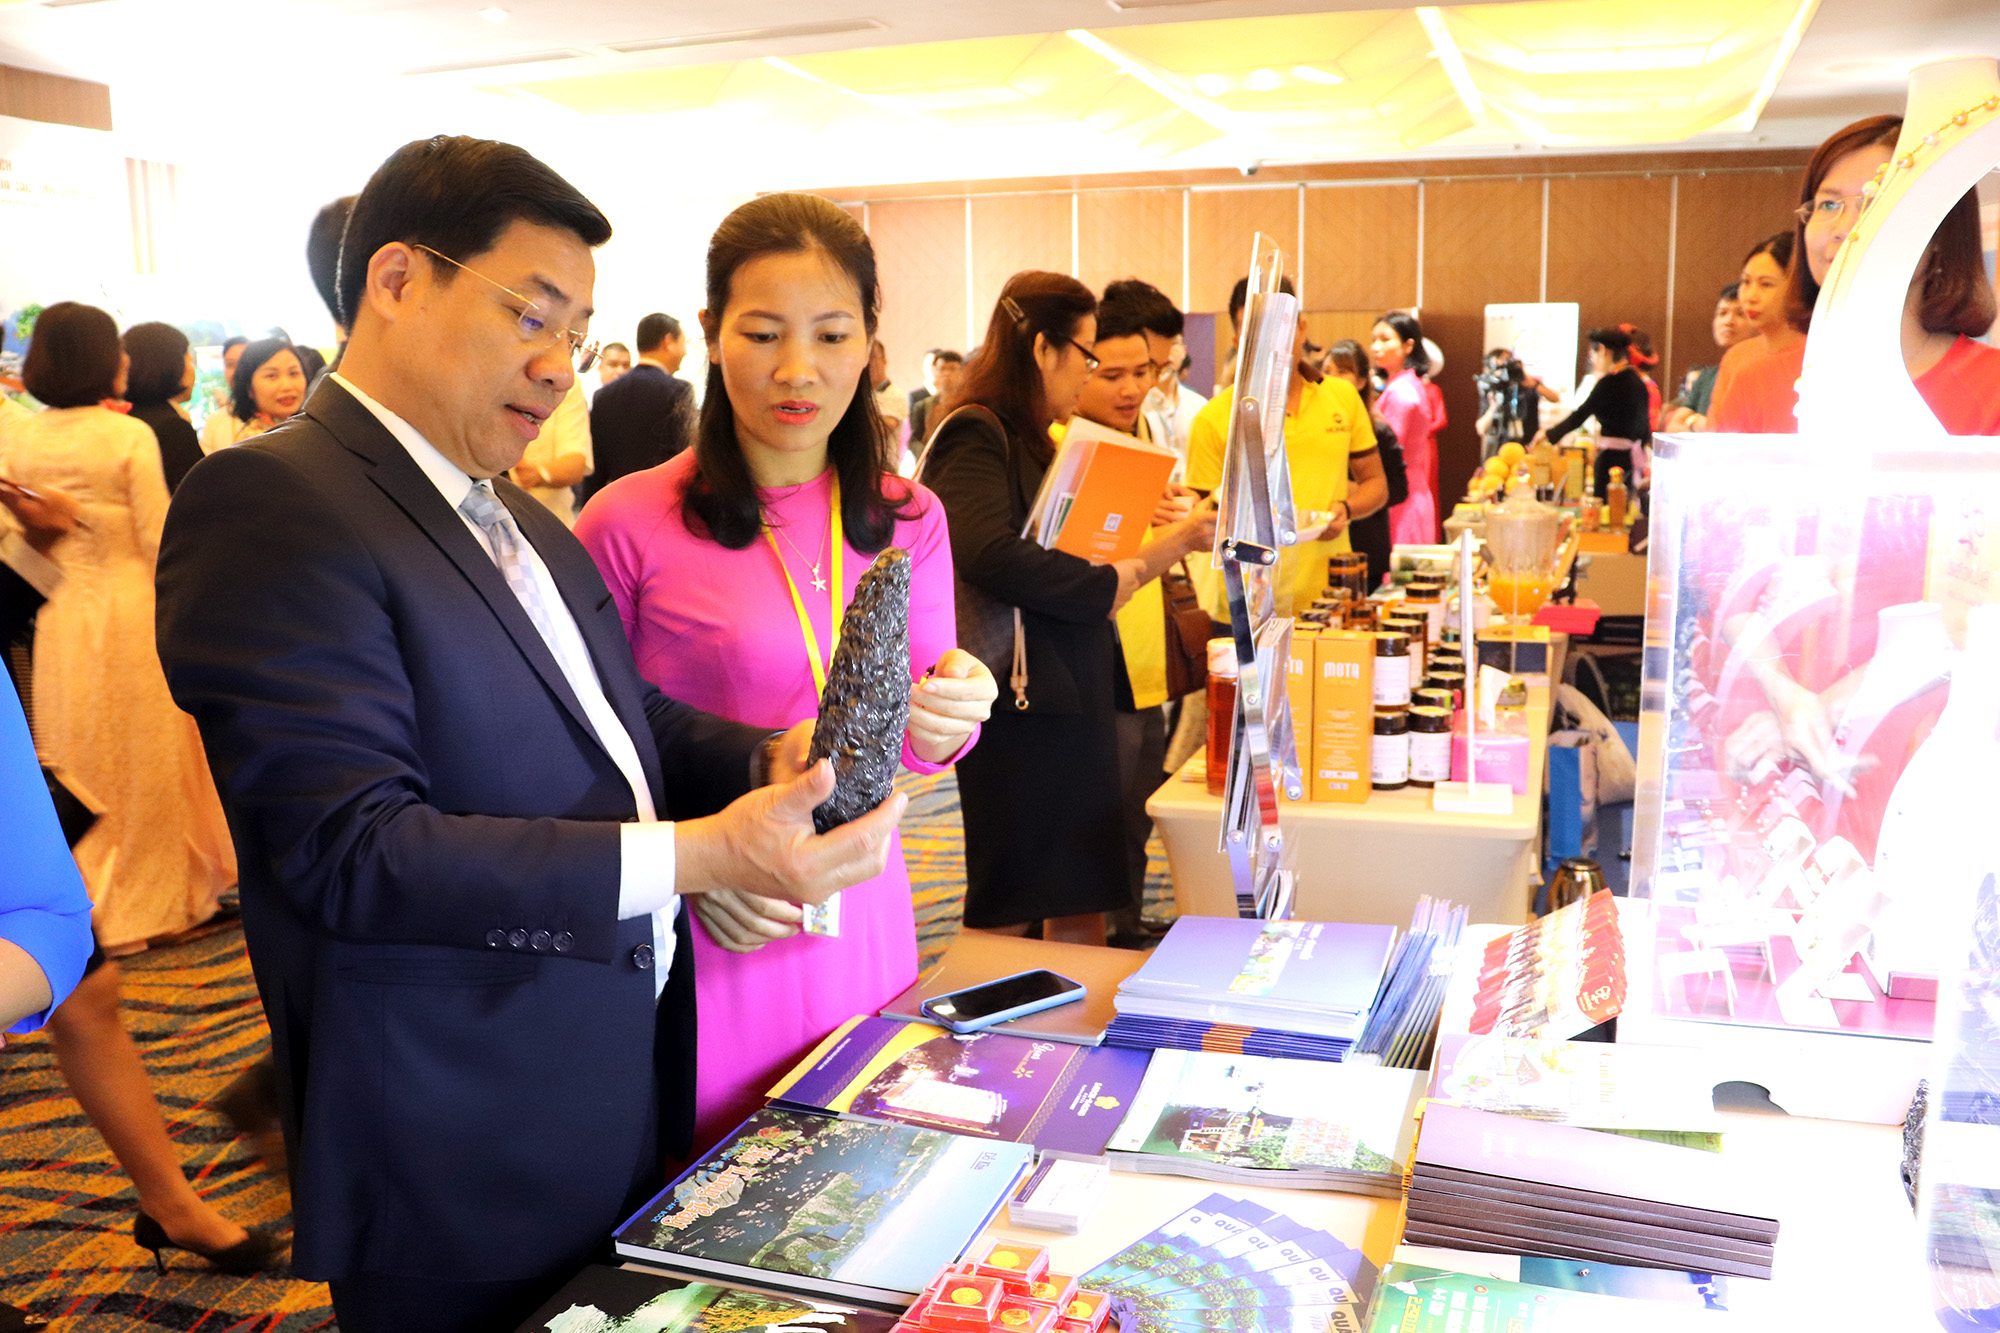 Sản phẩm mỹ nghệ than đá được trưng bày tại hội nghị liên kết phát triển du lịch TP Hồ Chí Minh và 8 tỉnh Đông Bắc, tổ chức tại TP Hạ Long tháng 11/2020.